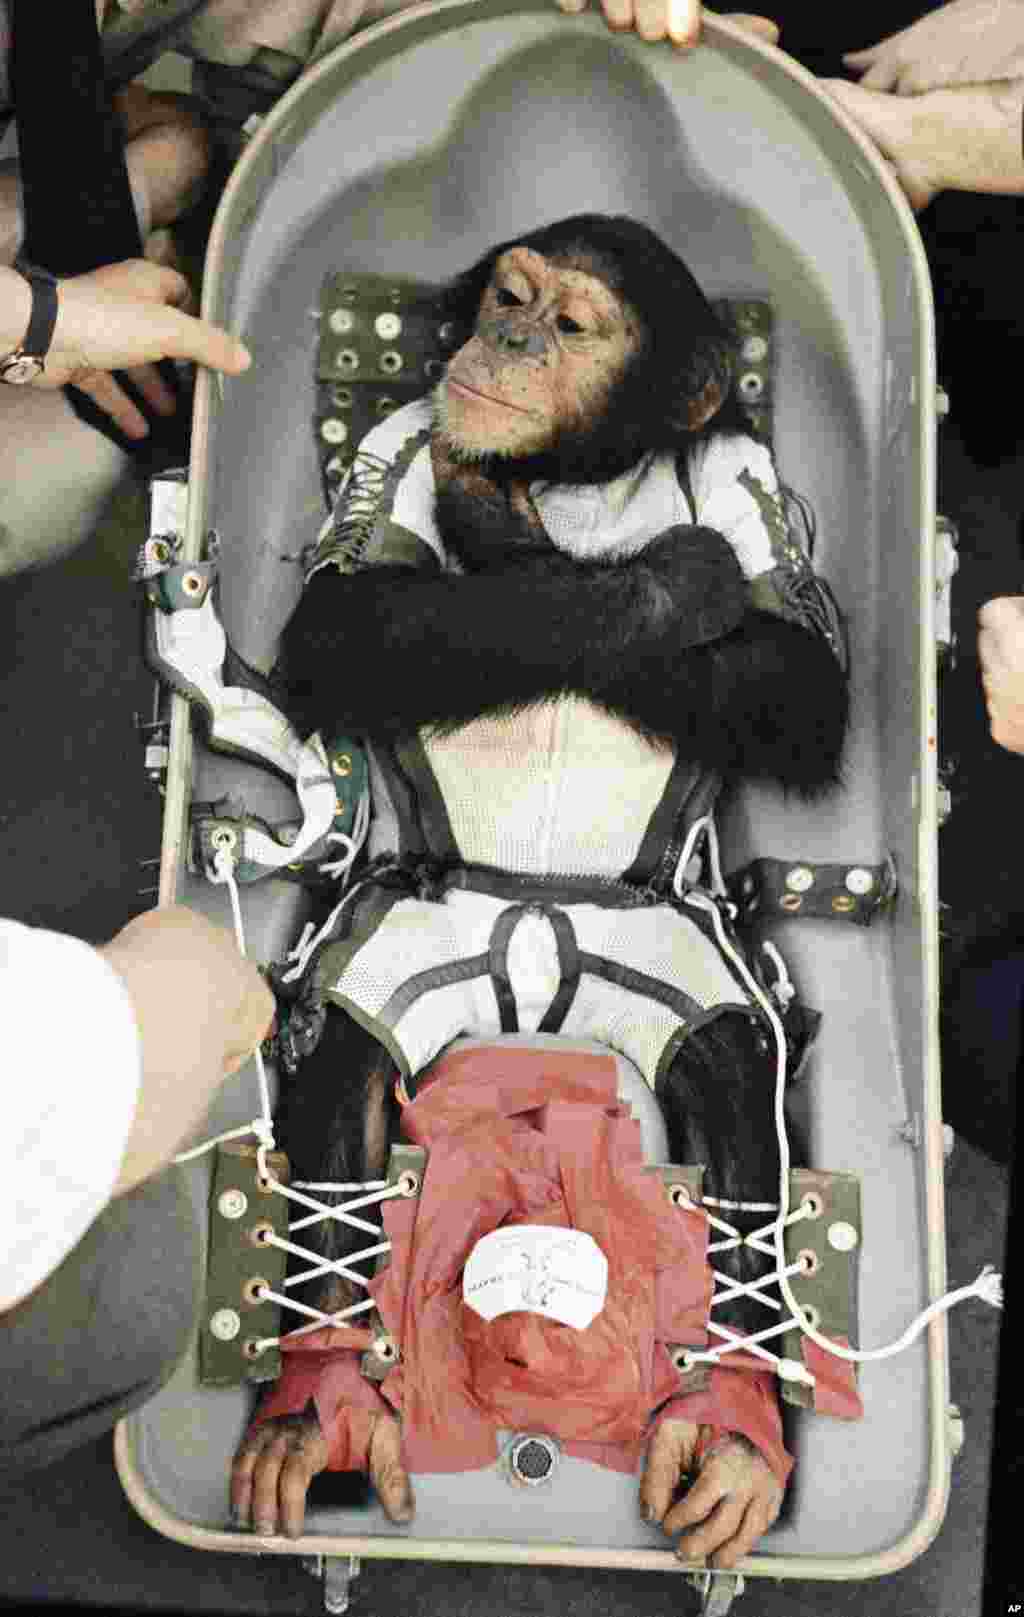 امروز در تاریخ - ۵۸ سال پیش، ایالات متحده، این شامپانزه به نام &laquo;هام&raquo; را به فضا فرستاد. او بعد از اینکه تا ۶۰۰ کیلومتری زمین رفت، سالم بازگشت. تحقیقات اولیه ناسا برای سفر به فضا روی حیوانات انجام می شد.